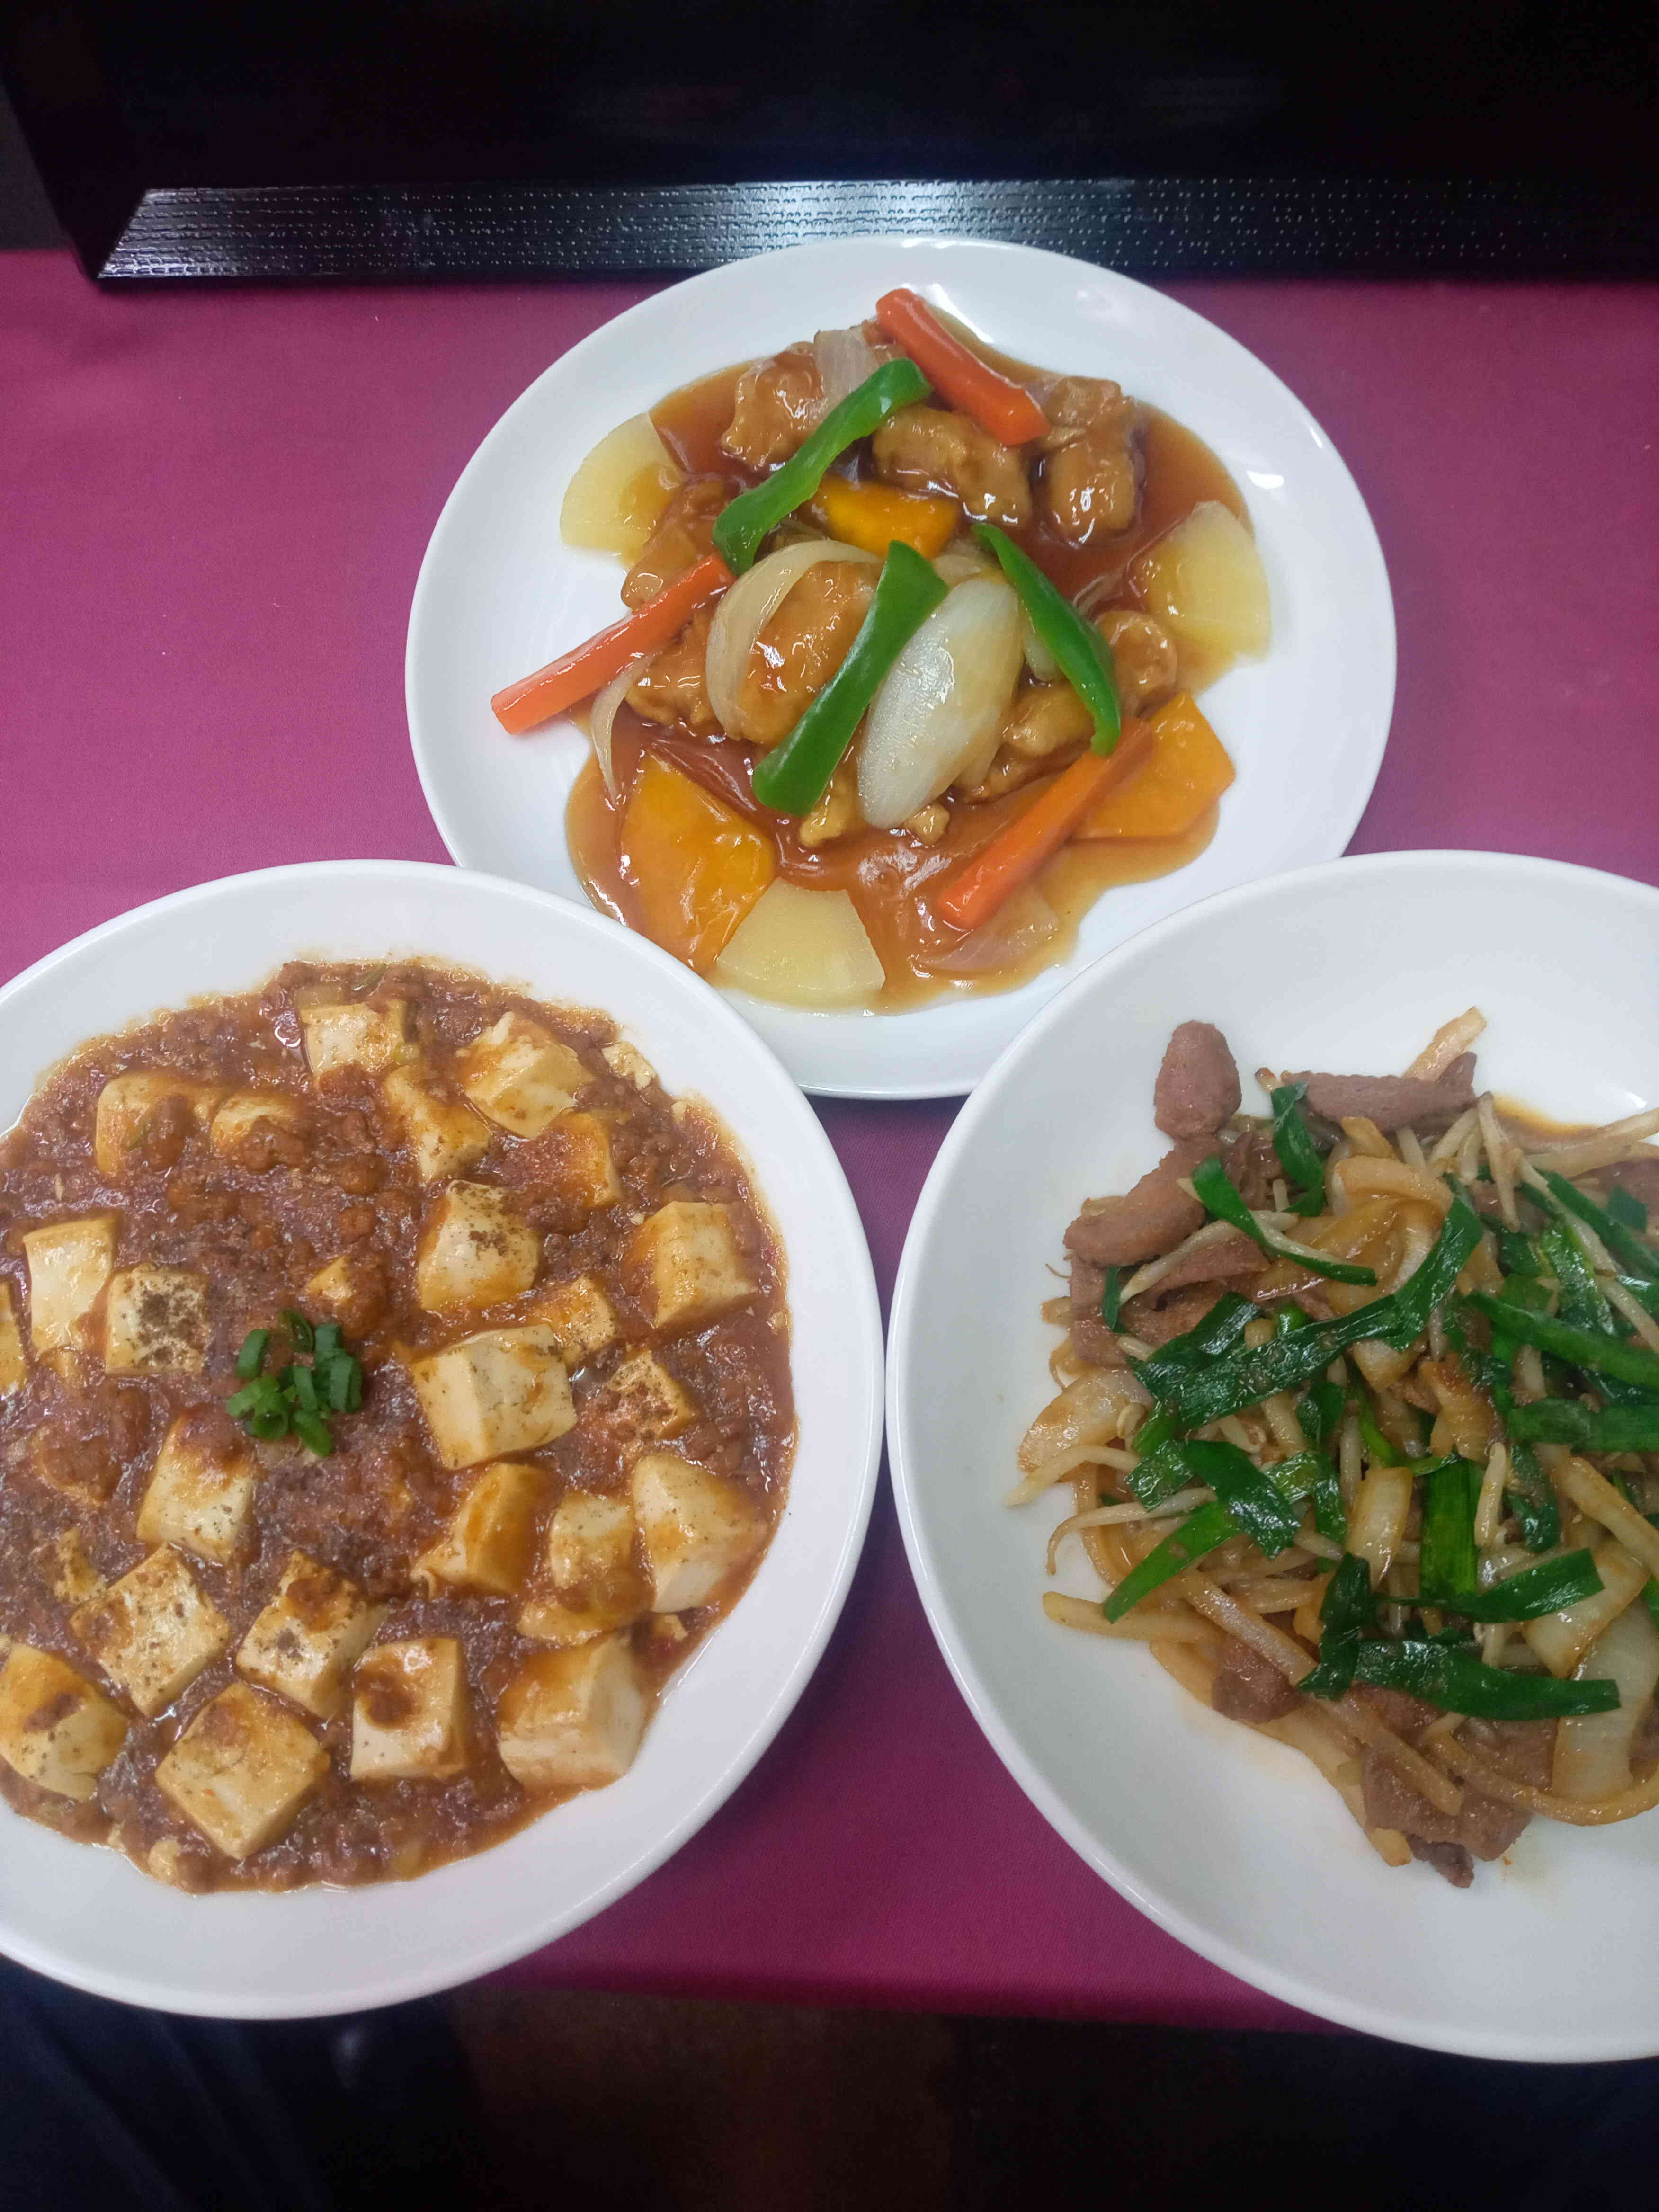 とんとん人気の
中華料理
豚フィレ肉のやわらか酢豚
エビのチリソース
マーボー豆腐